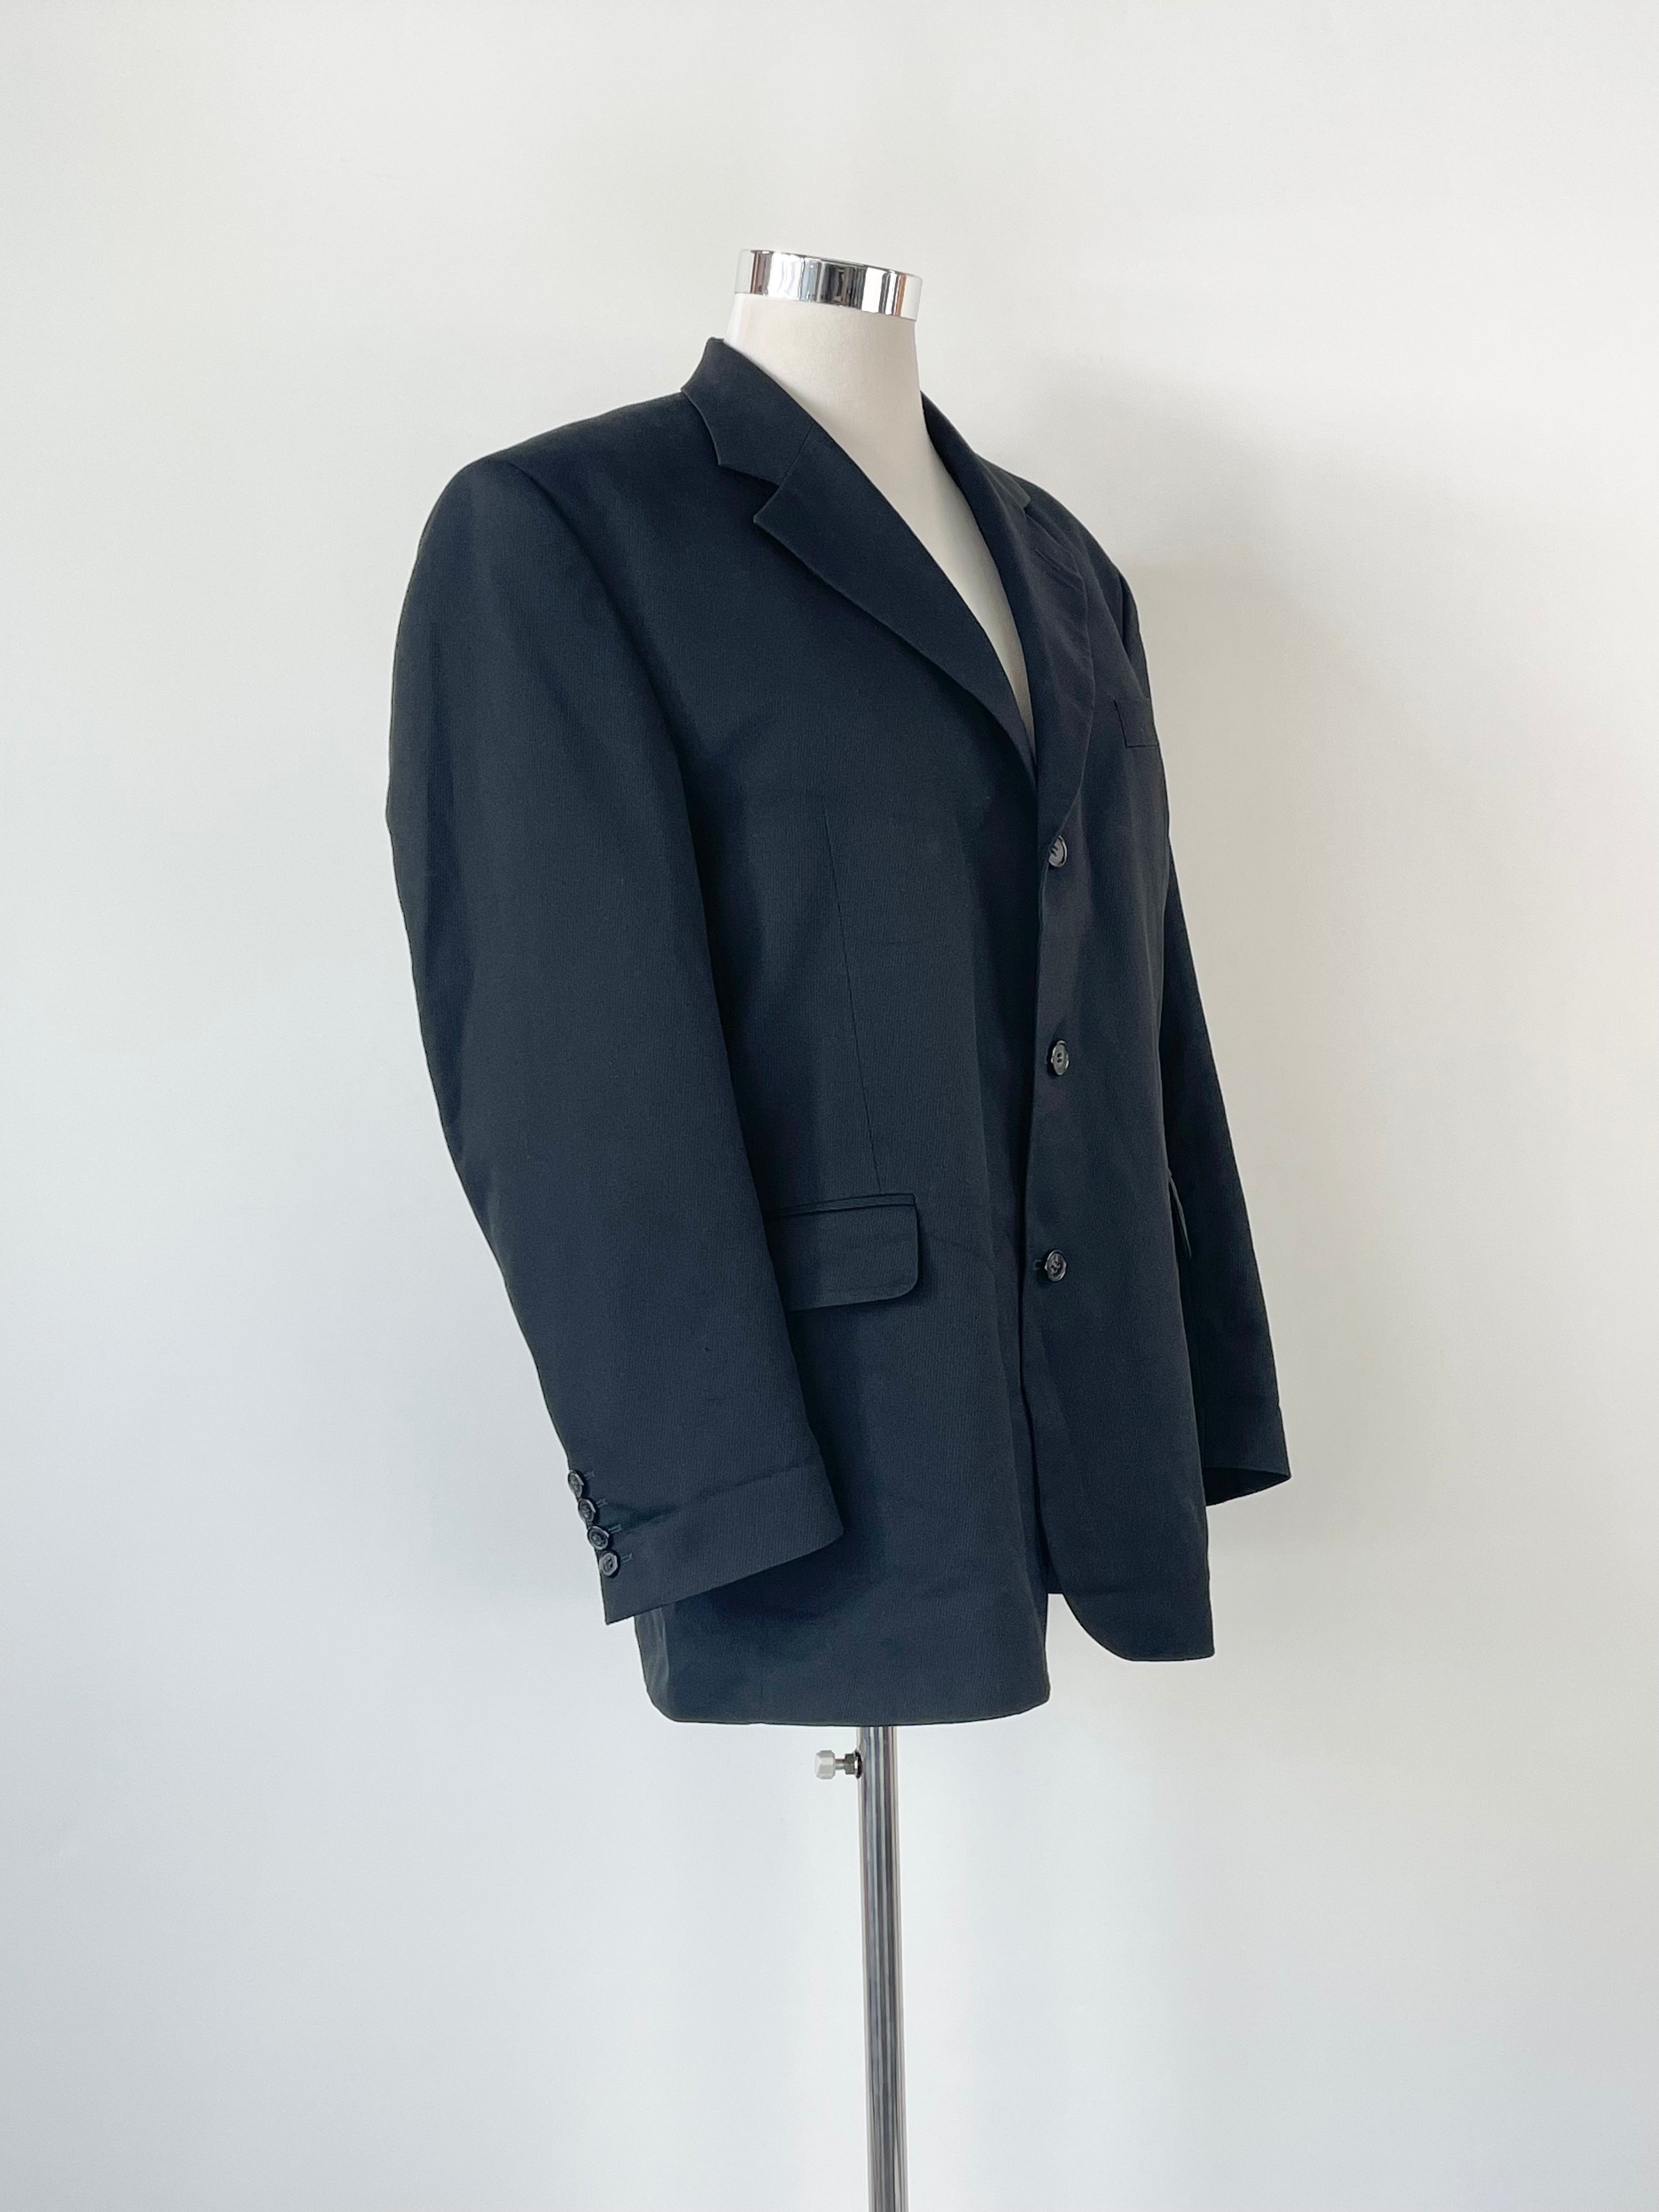 Vintage Yves Saint Laurent Menswear Wool Herringbone Blazer Size: 40R